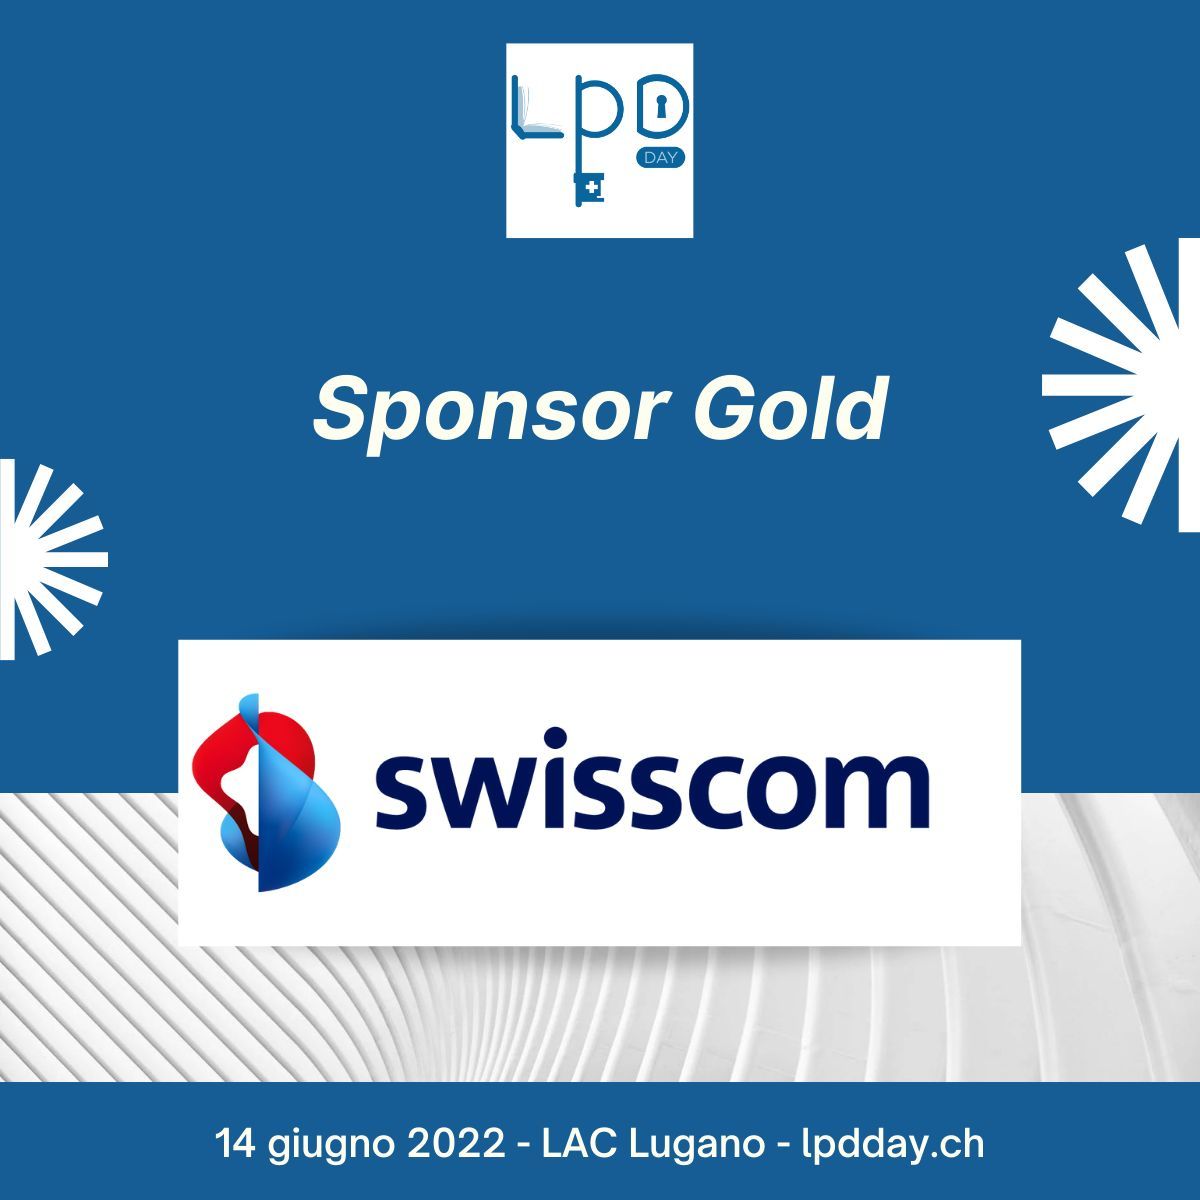 Annonce de Swisscom en tant que "Gold Sponsor" du premier LPD Day